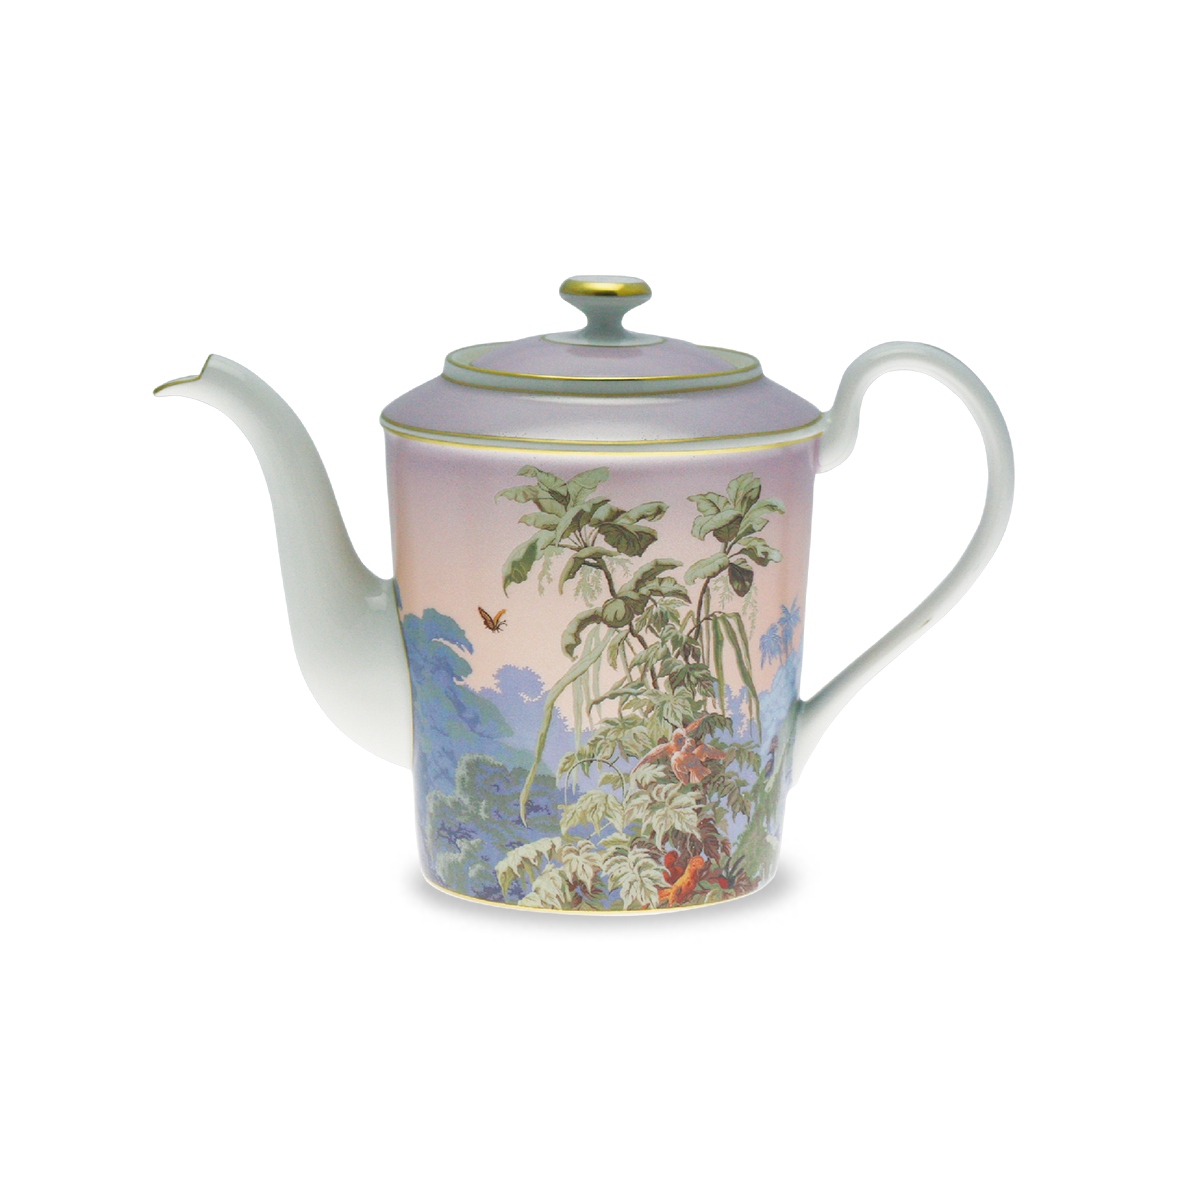 Le Bresil Teapot